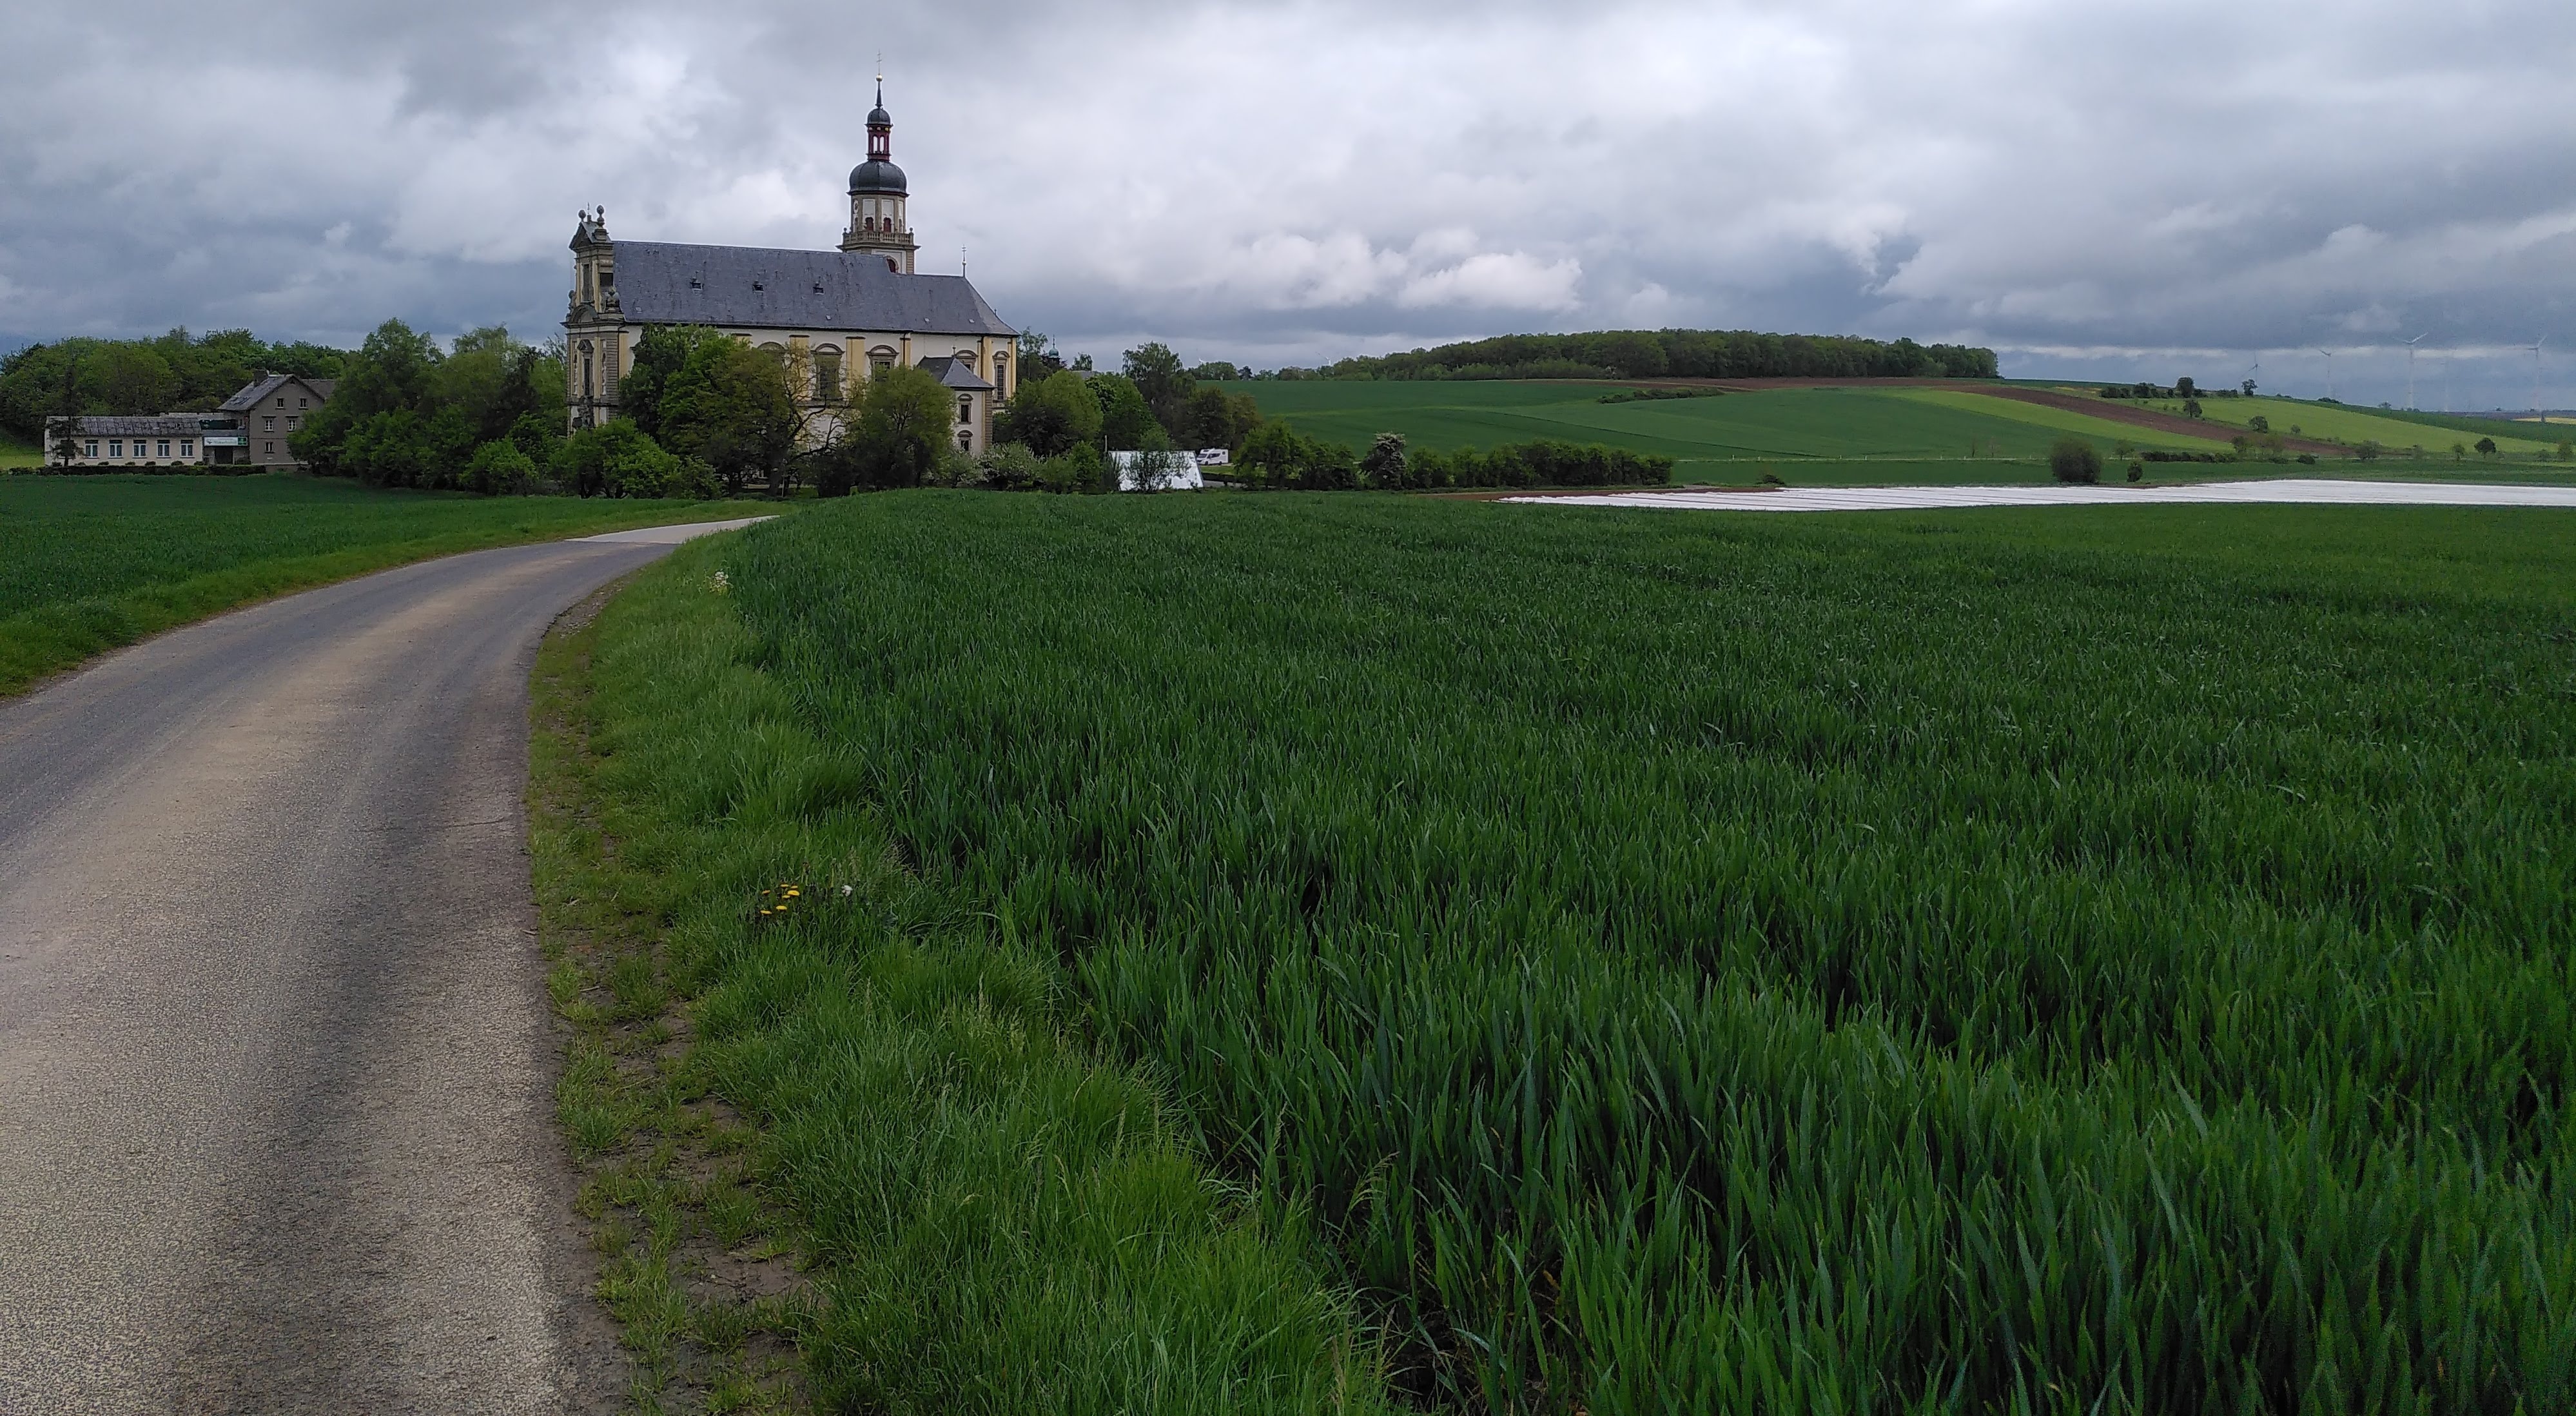 Ansicht der Wallfahrtskirche Fährbrück vom süden her aus der Ferne. Im Vordergrund sind Felder. Ein Weg läuft auf die Kirche zu.